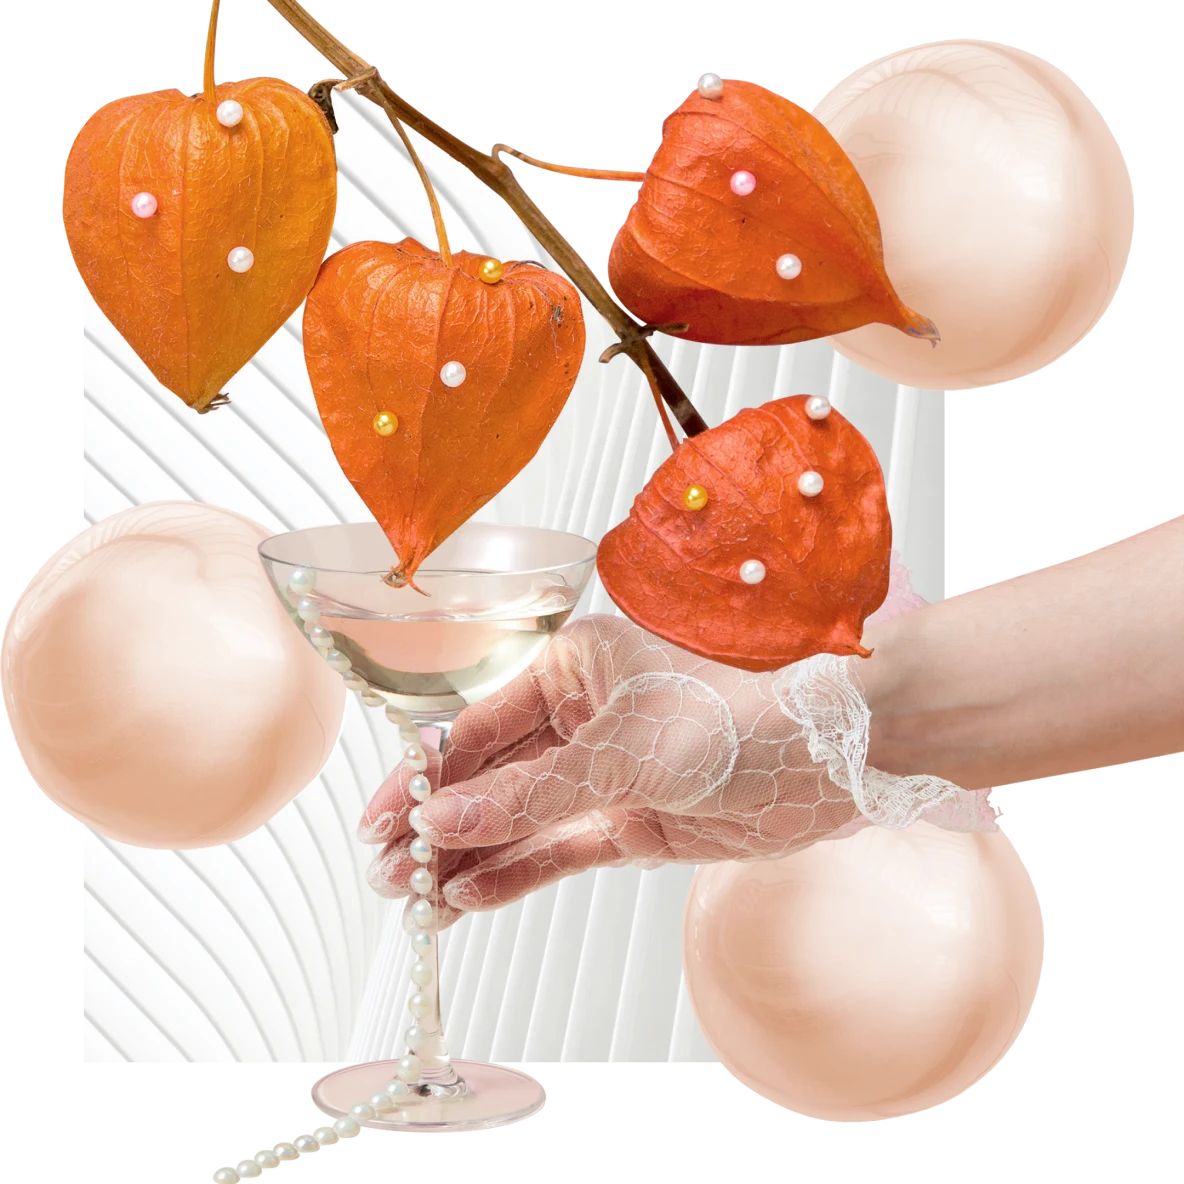 細い枝に生ったオレンジ色のホオズキ 4 個。背景には、オレンジ色の半透明のパール、マティーニグラスを持つレースの手袋をした手、グラスから下がった真珠のネックレス、白い扇形の模様。
